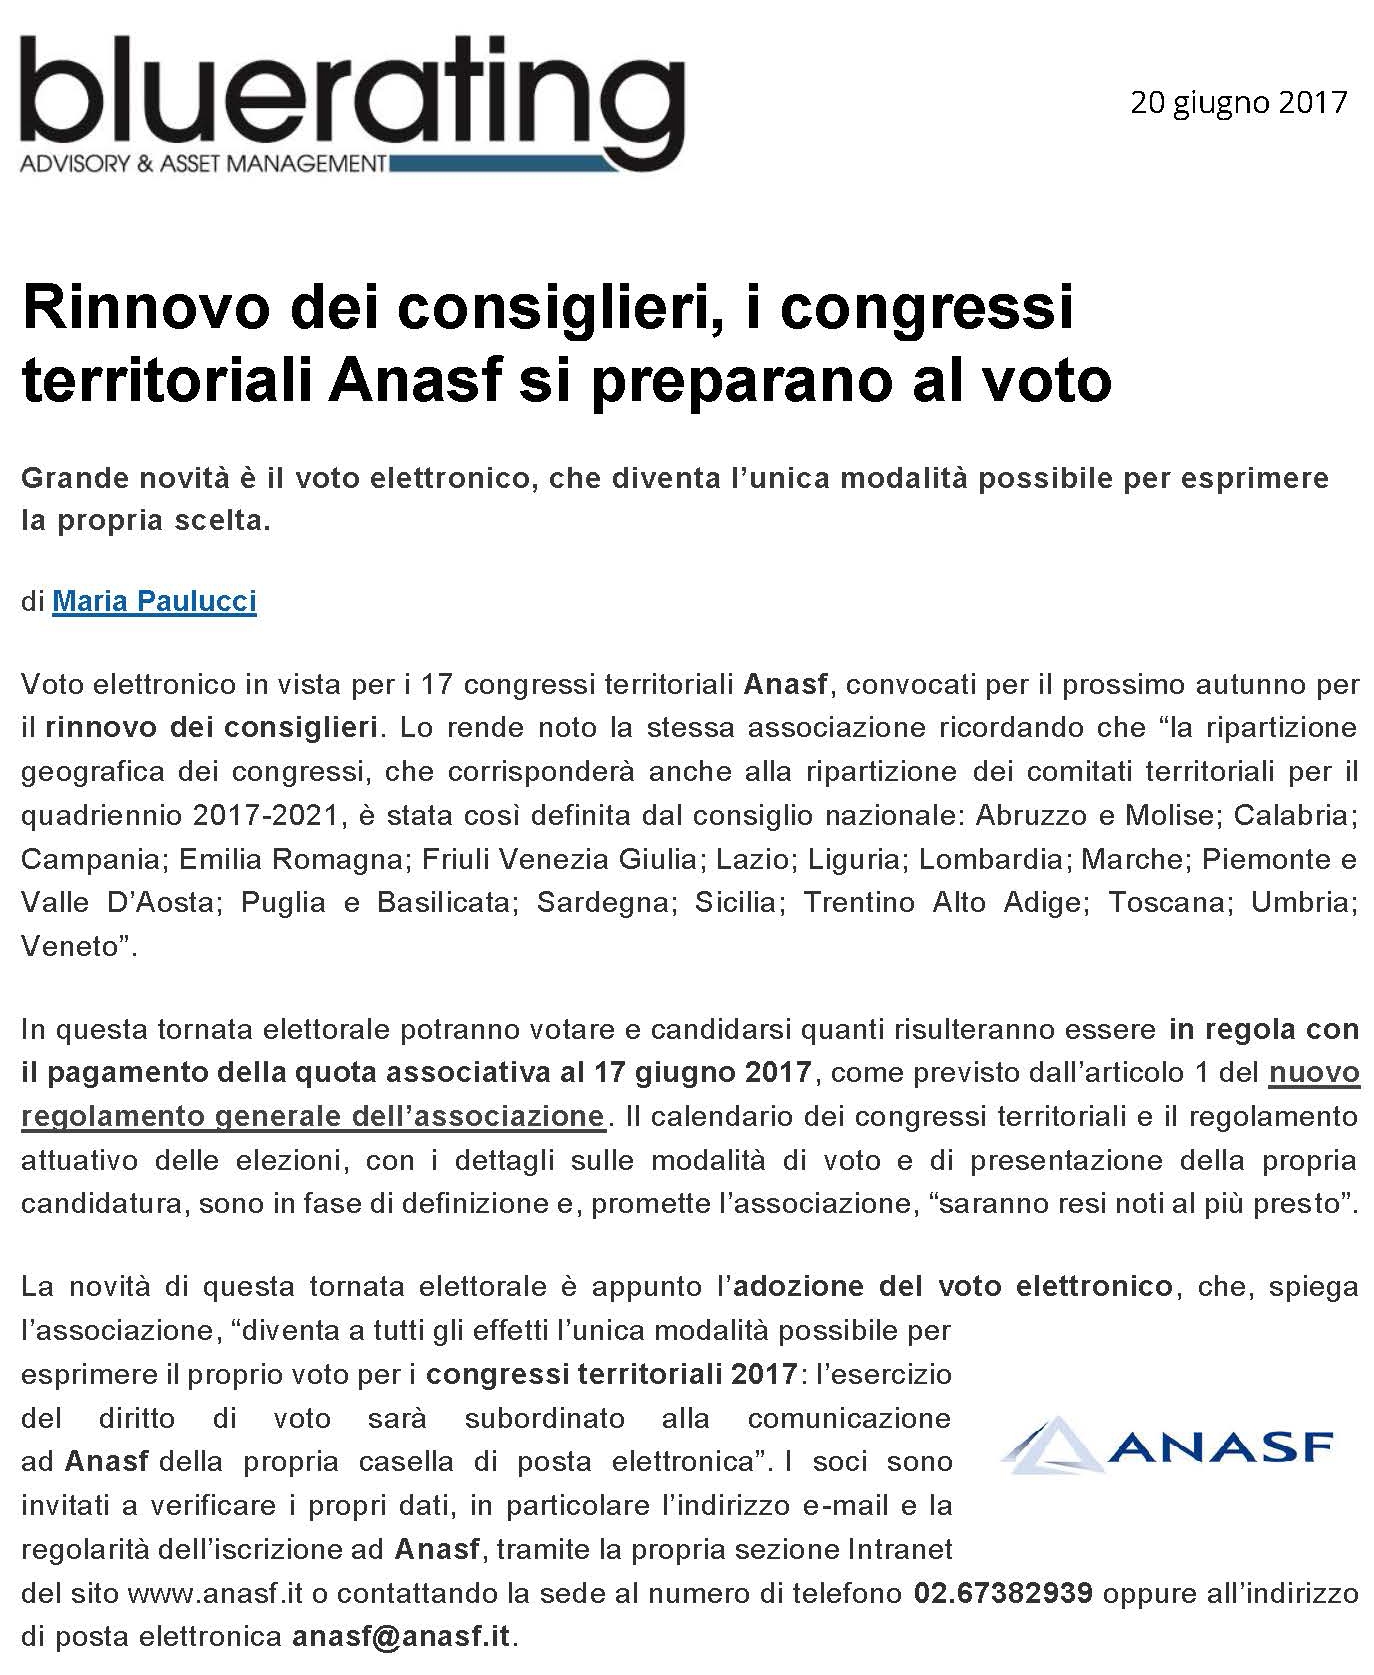 Rinnovo dei consiglieri, i congressi territoriali Anasf si preparano al voto